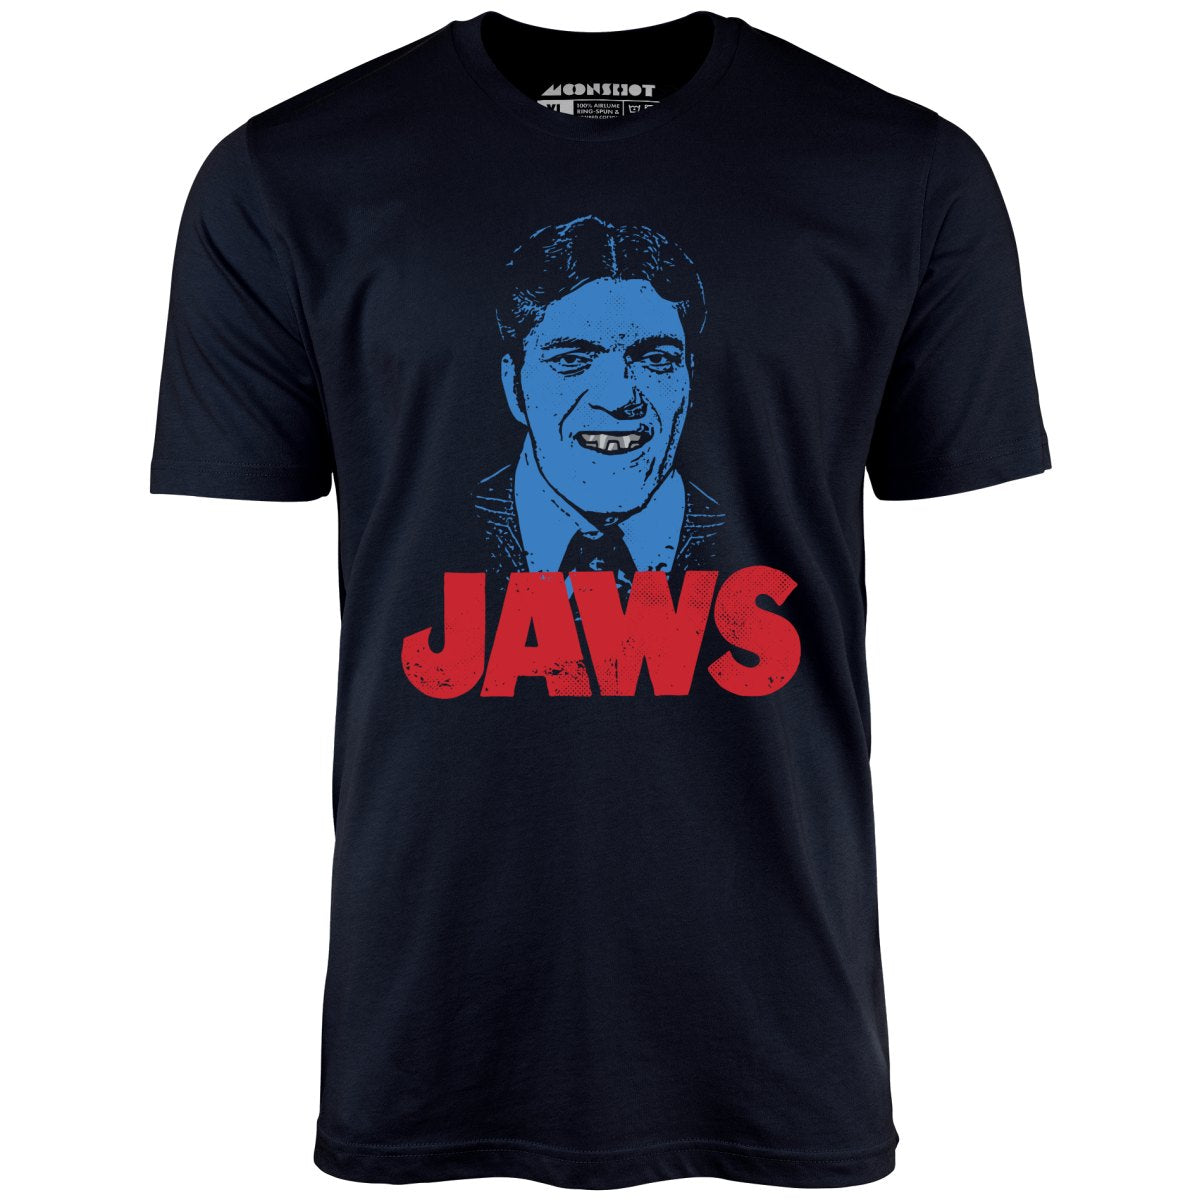 Jaws 007 - Unisex T-Shirt